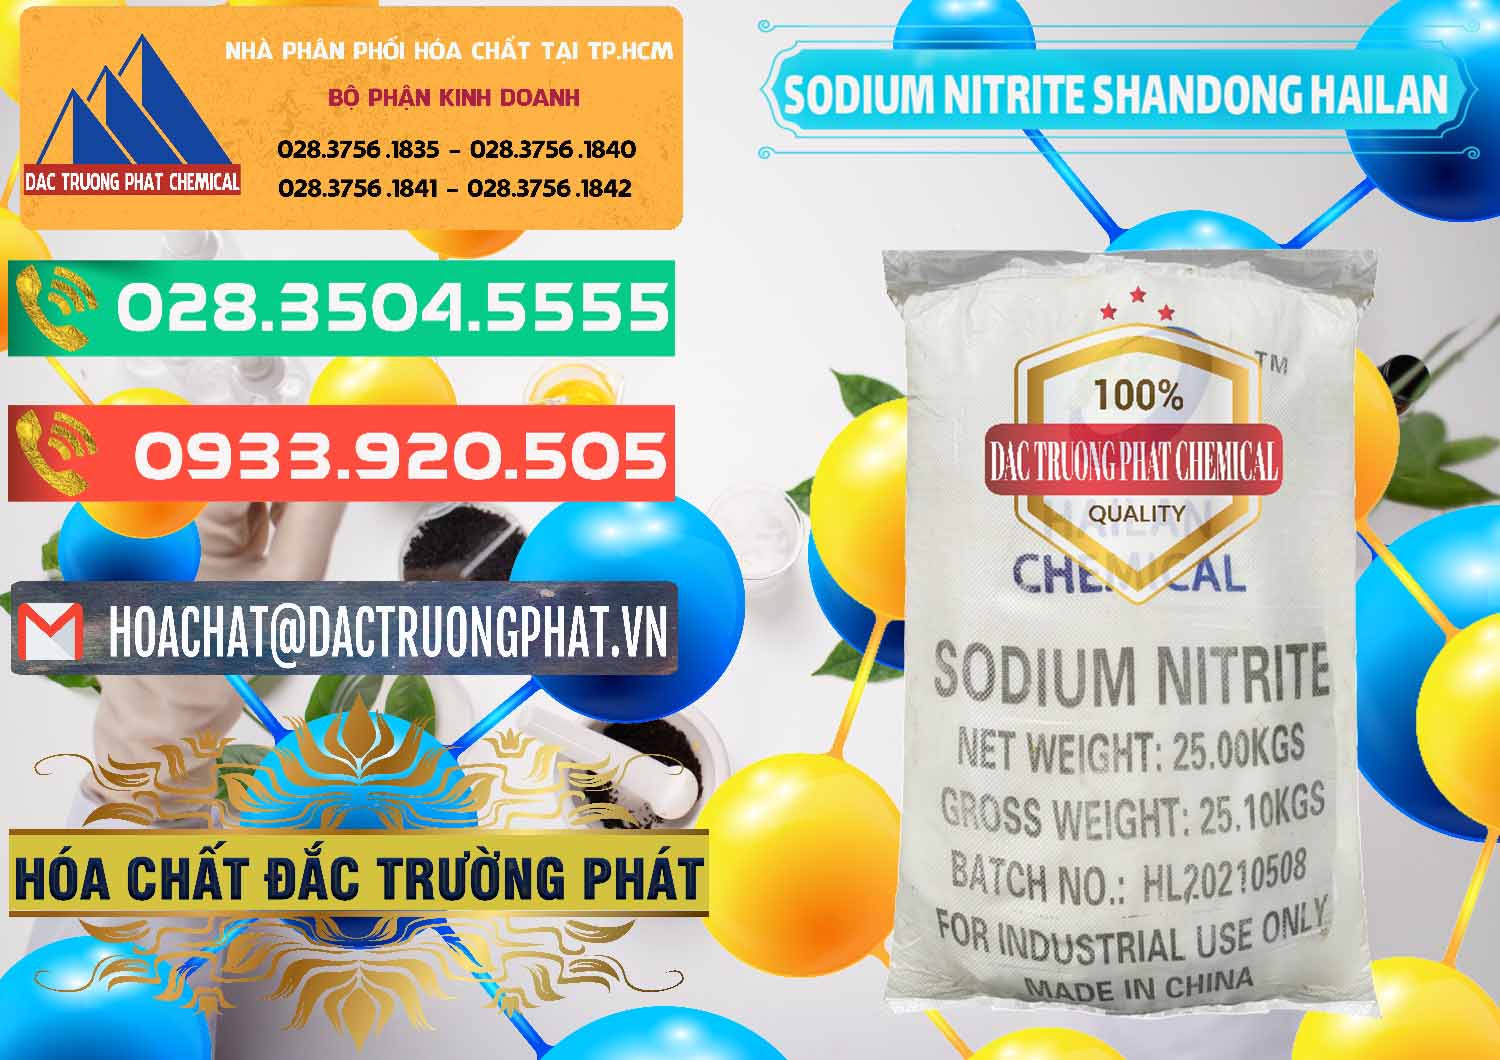 Bán ( cung ứng ) Sodium Nitrite - NANO2 99.3% Shandong Hailan Trung Quốc China - 0284 - Cty chuyên phân phối & cung ứng hóa chất tại TP.HCM - congtyhoachat.com.vn